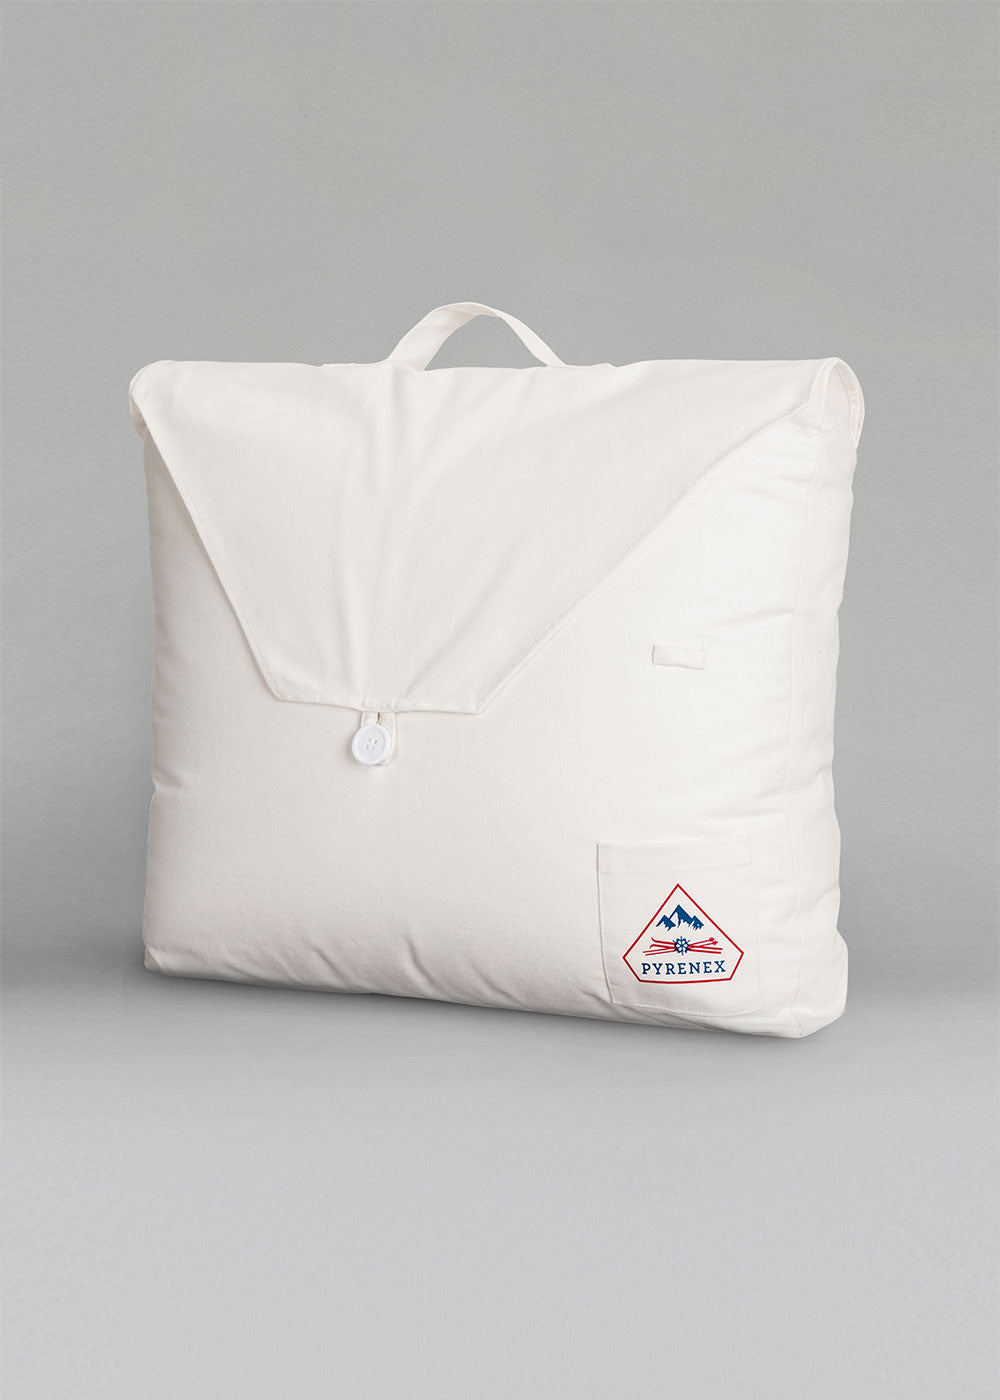 Saona Bi comfort Pillow-6